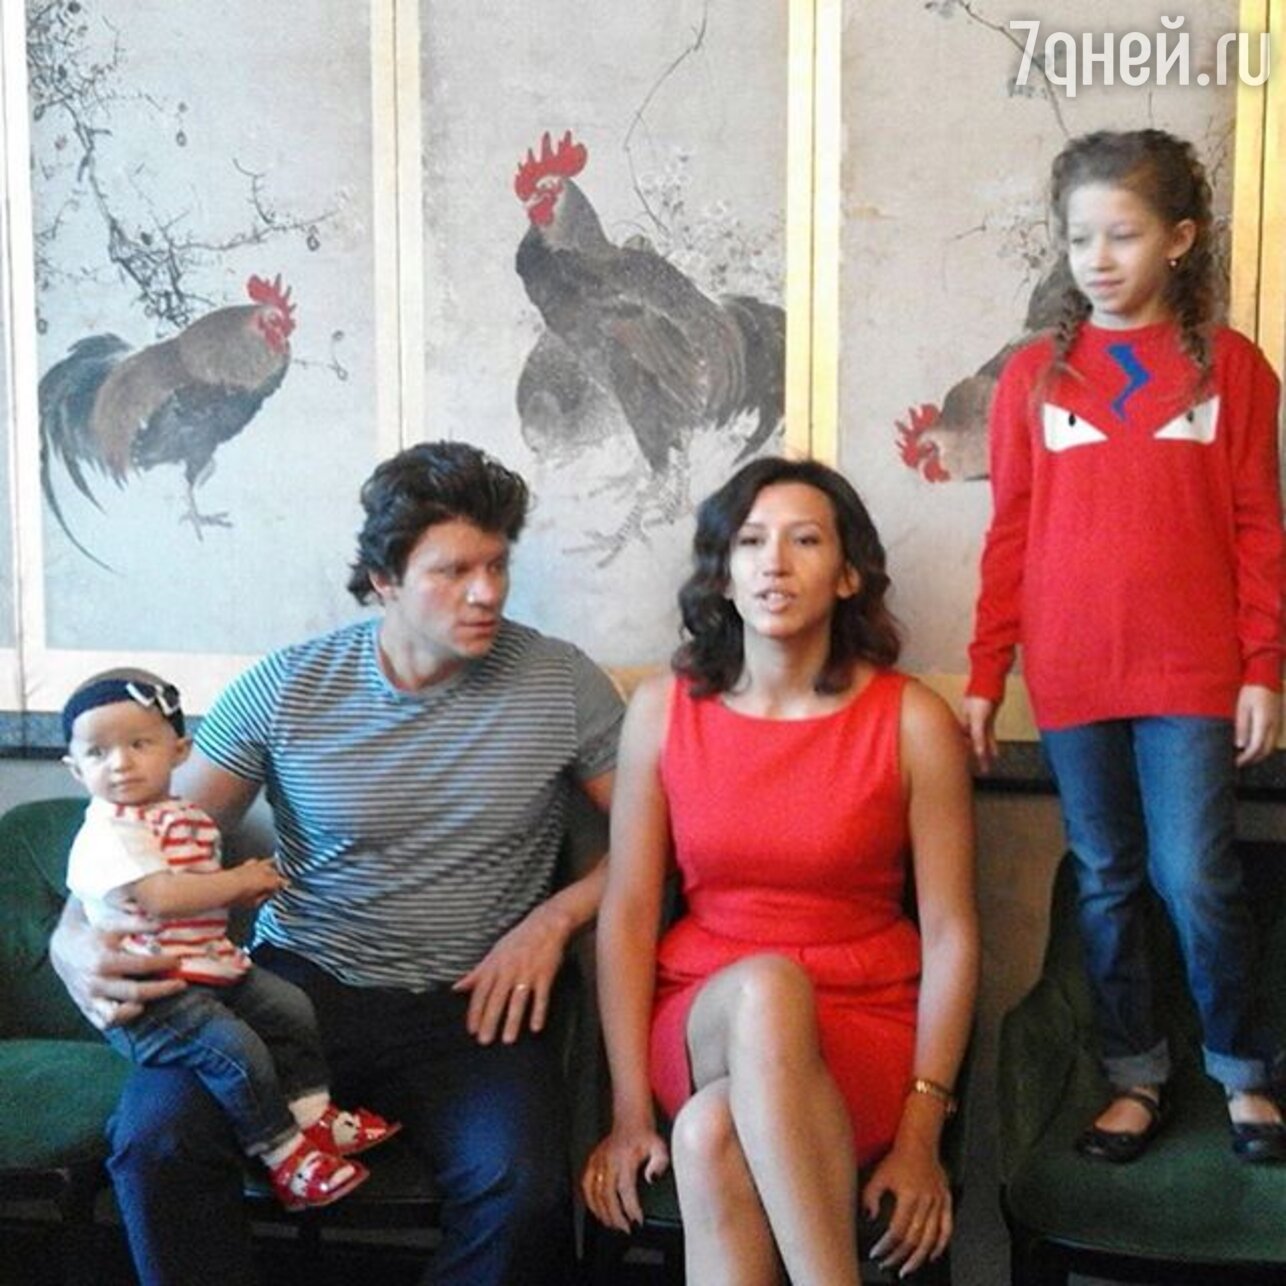 Борщева елена семья с мужем и детьми фото